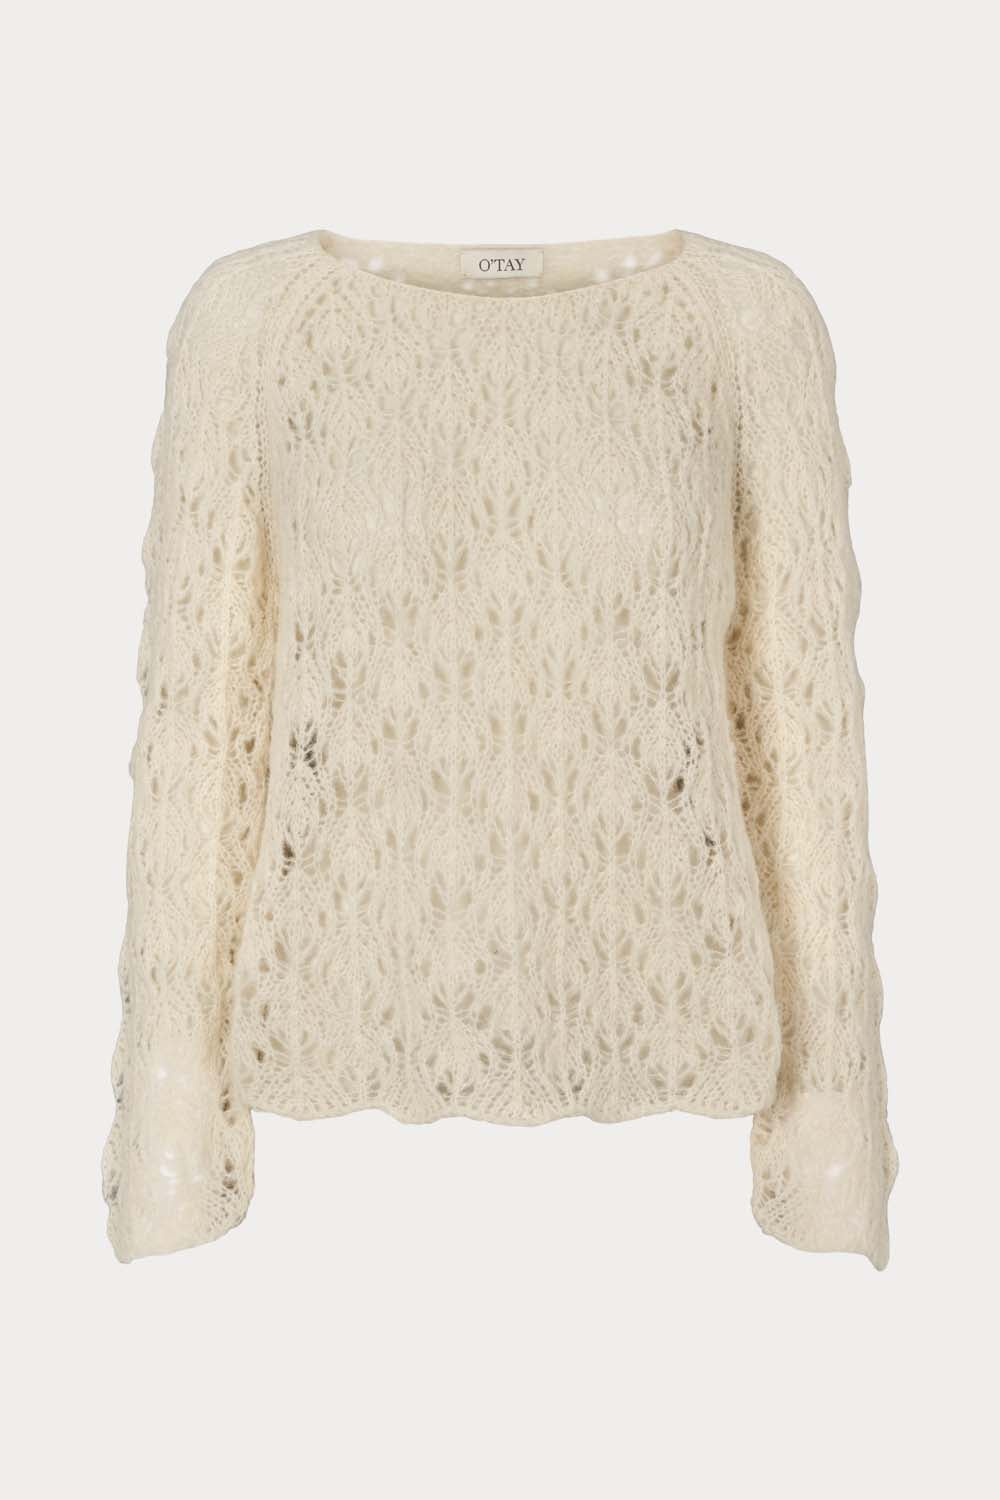 O'TAY Camilla Sweater Bluser Off White